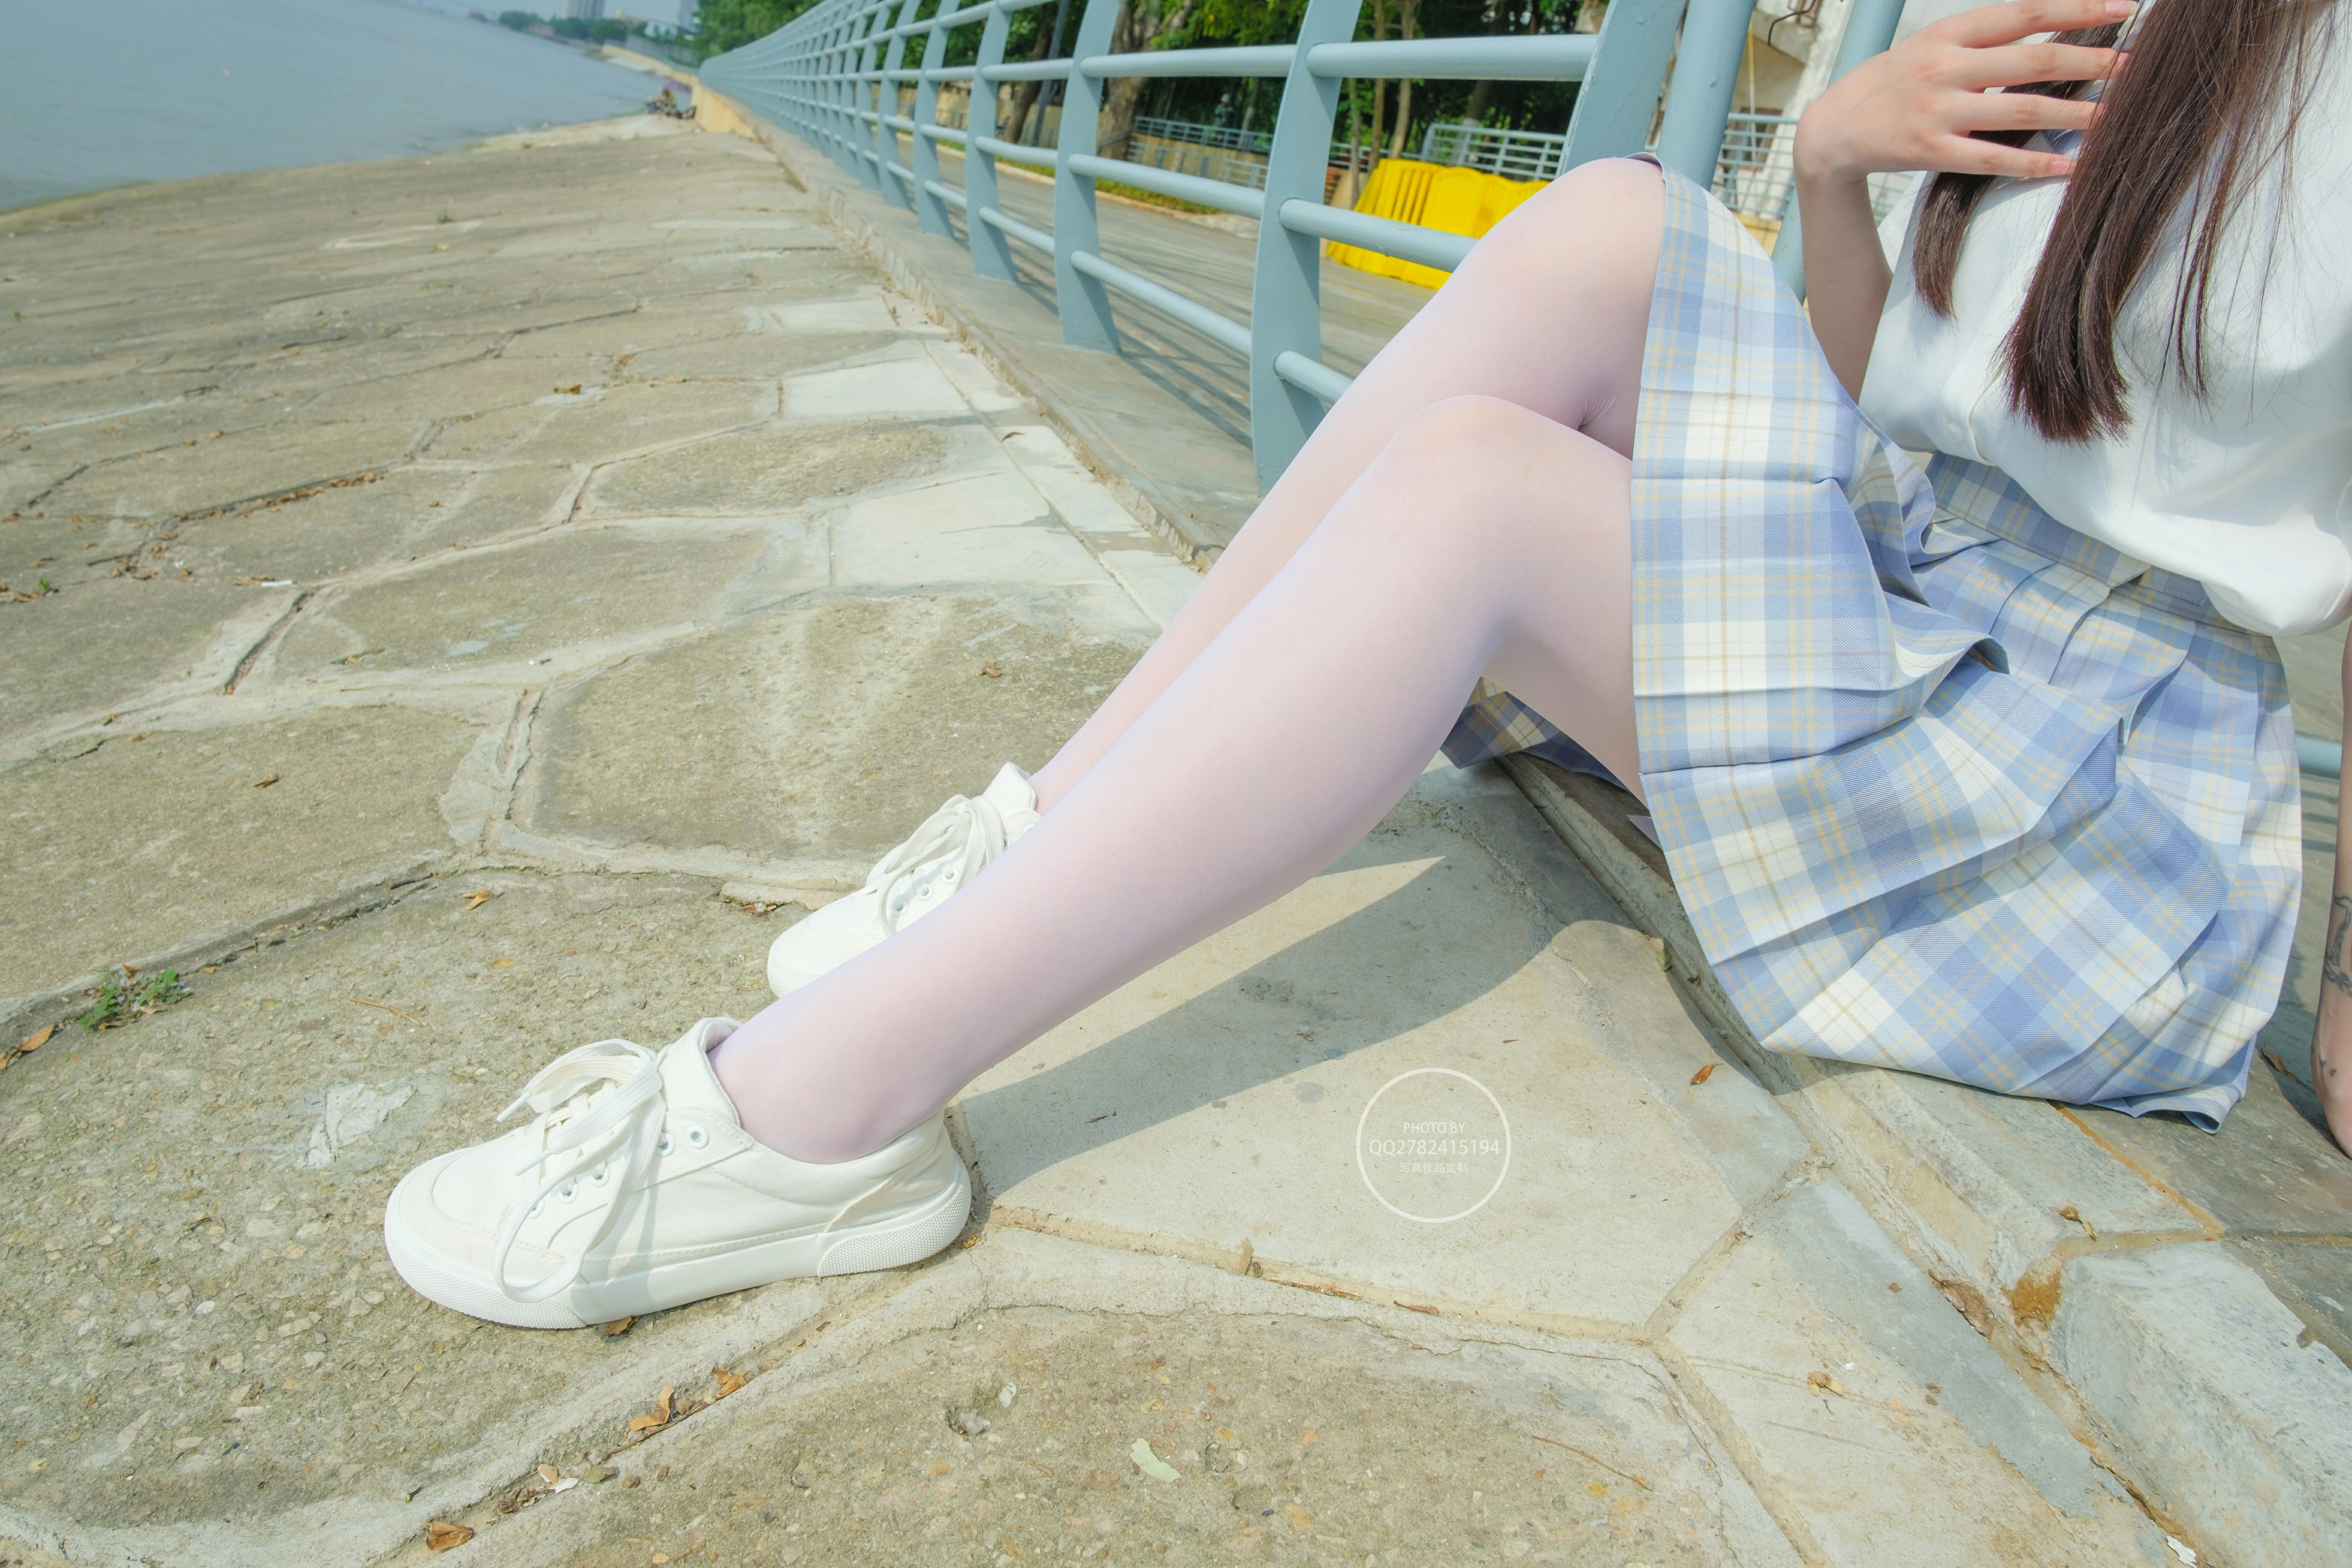 [森萝财团]有料NO.046 清纯圆润小萝莉 白色JK制服与蓝色短裙加白色丝袜美腿操场写真,